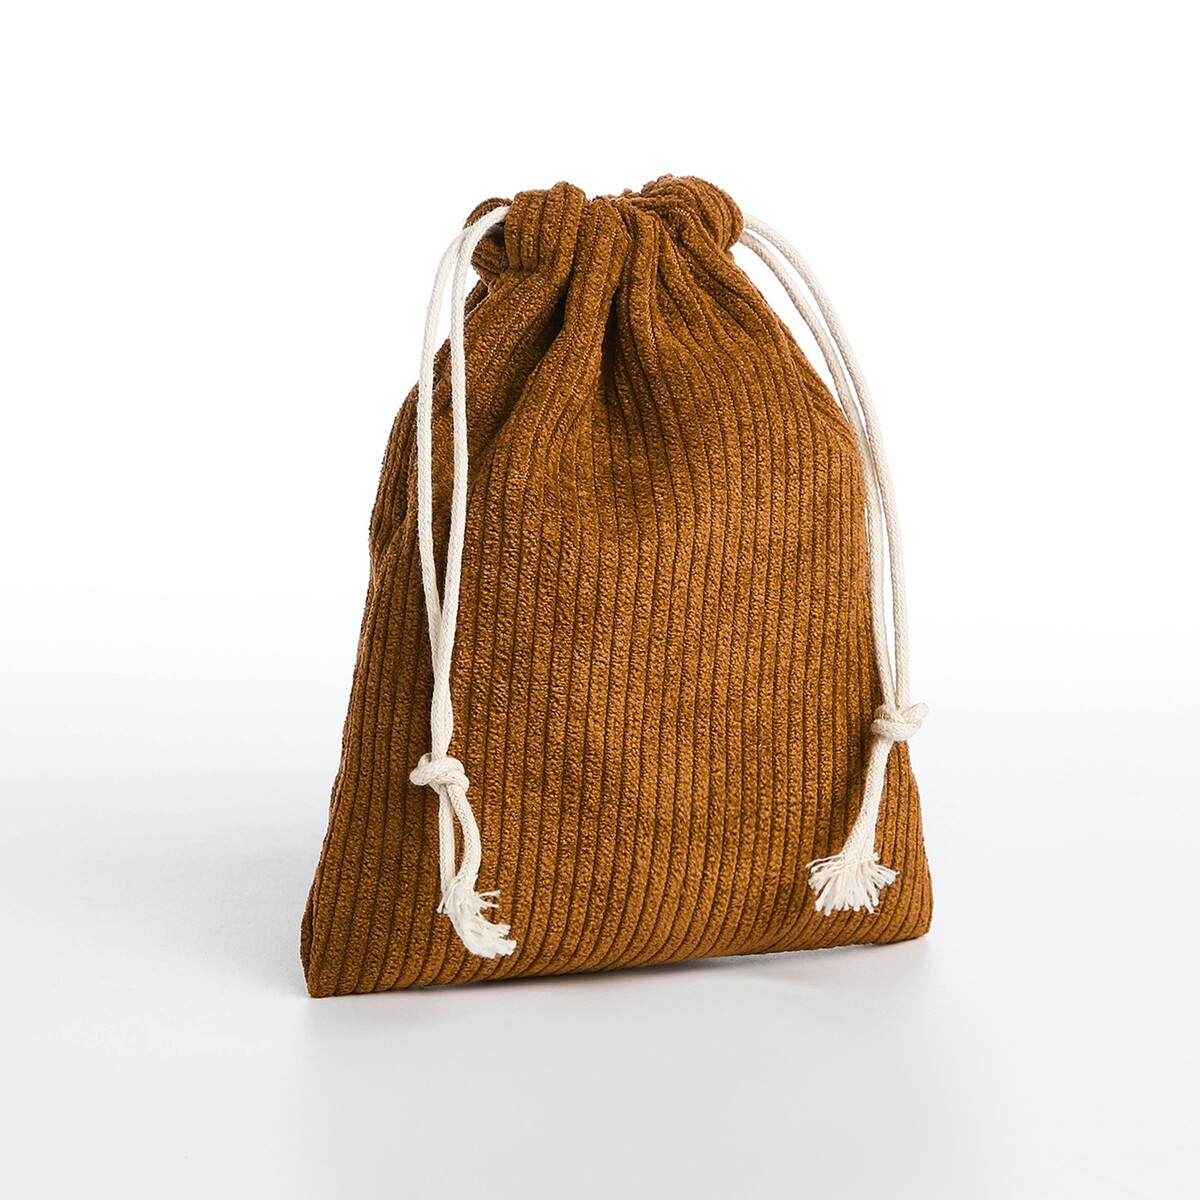 Косметичка - мешок с завязками, цвет коричневый косметичка мешок с завязками горчичный